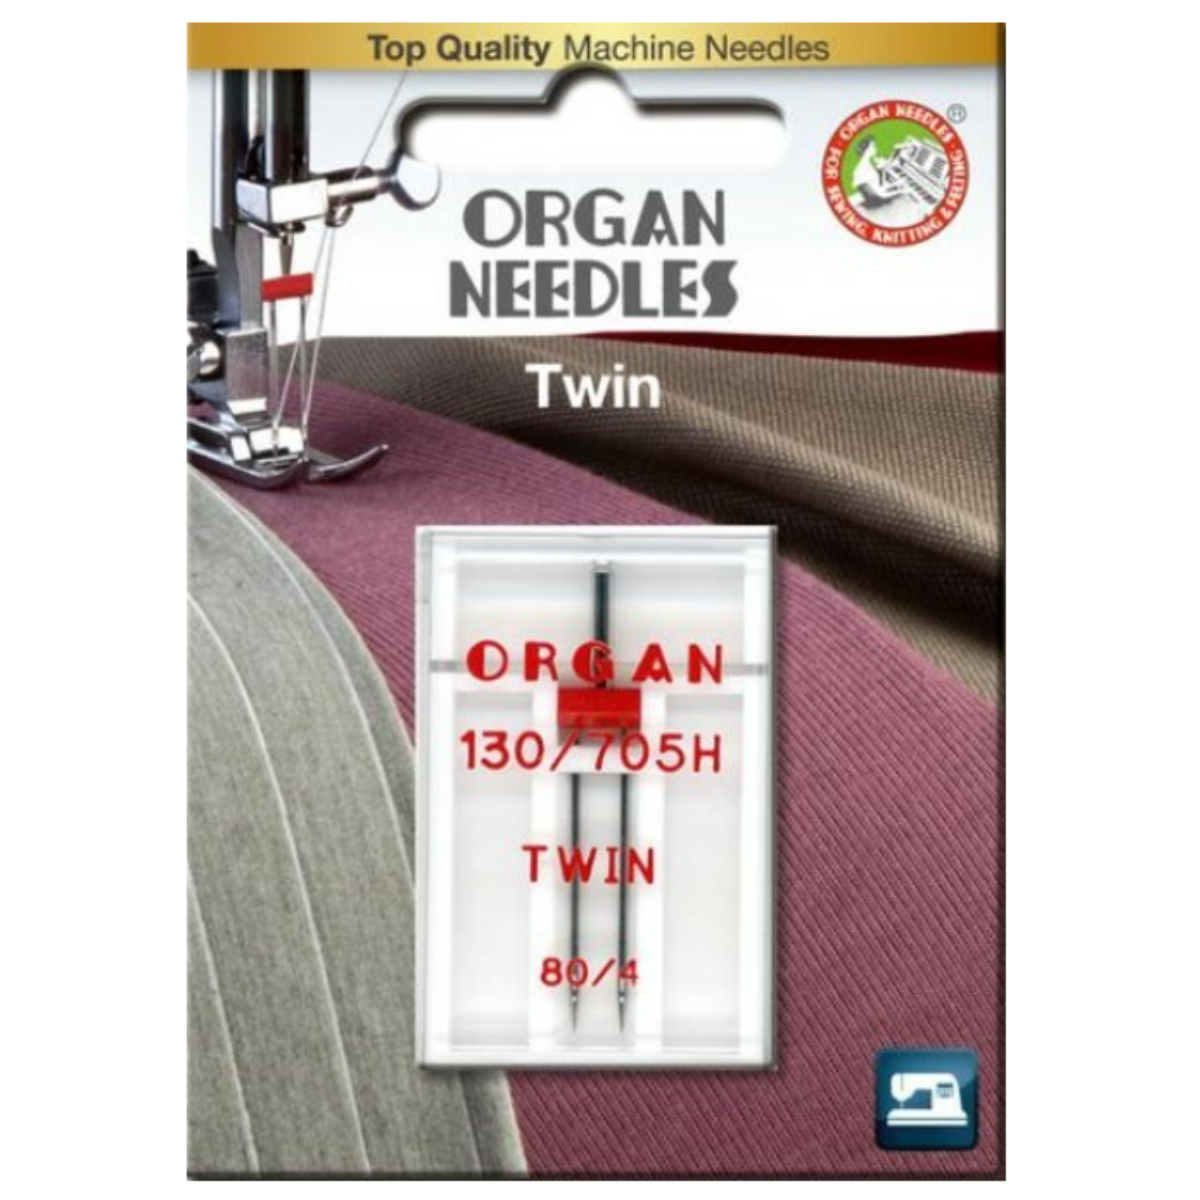 Ompelukoneneula Twin Organ, useita vaihtoehtoja